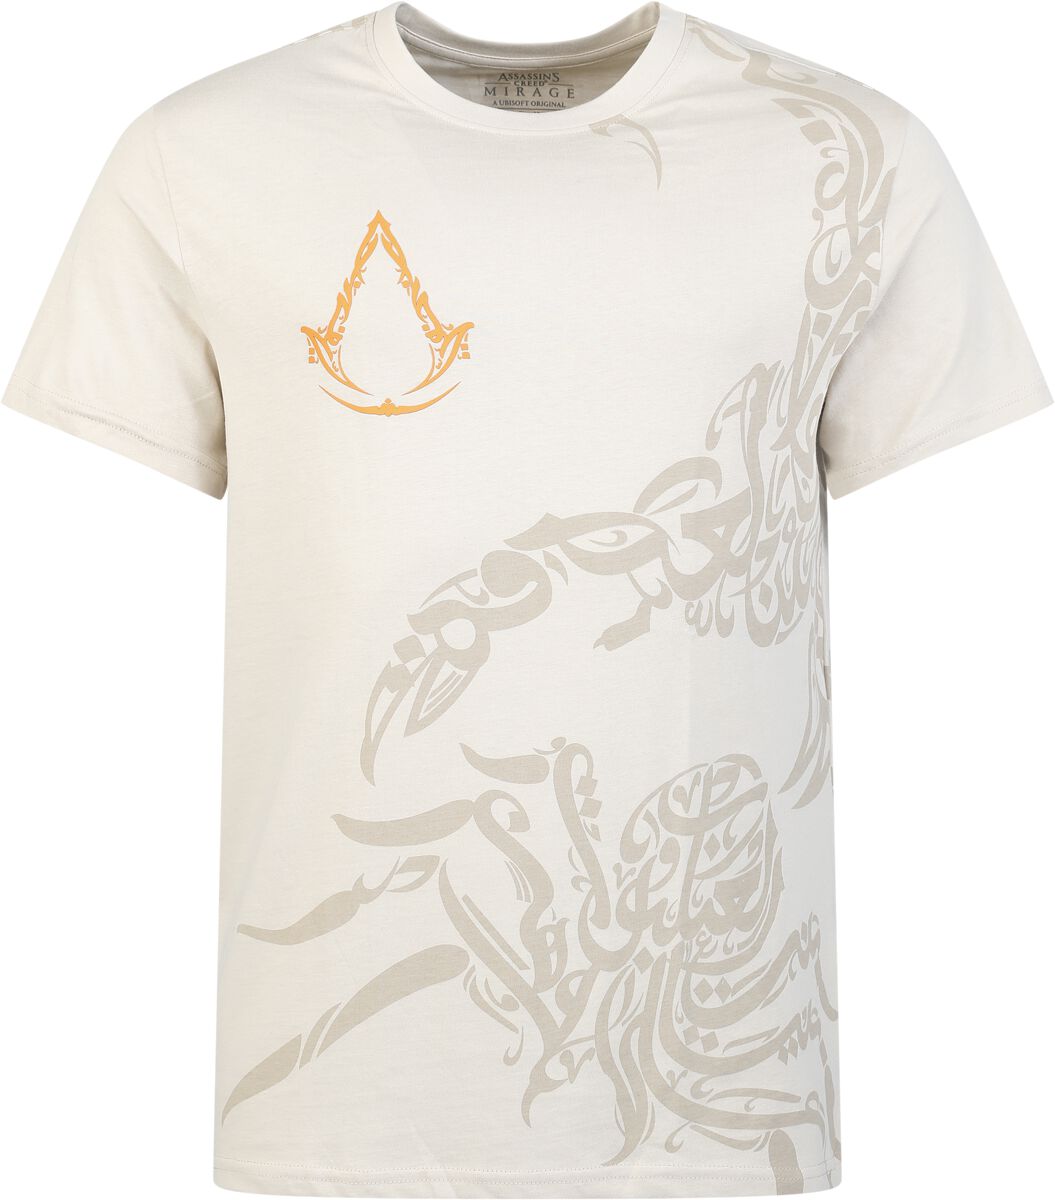 Assassin`s Creed - Gaming T-Shirt - Mirage - Animals - S bis XXL - für Männer - Größe S - beige